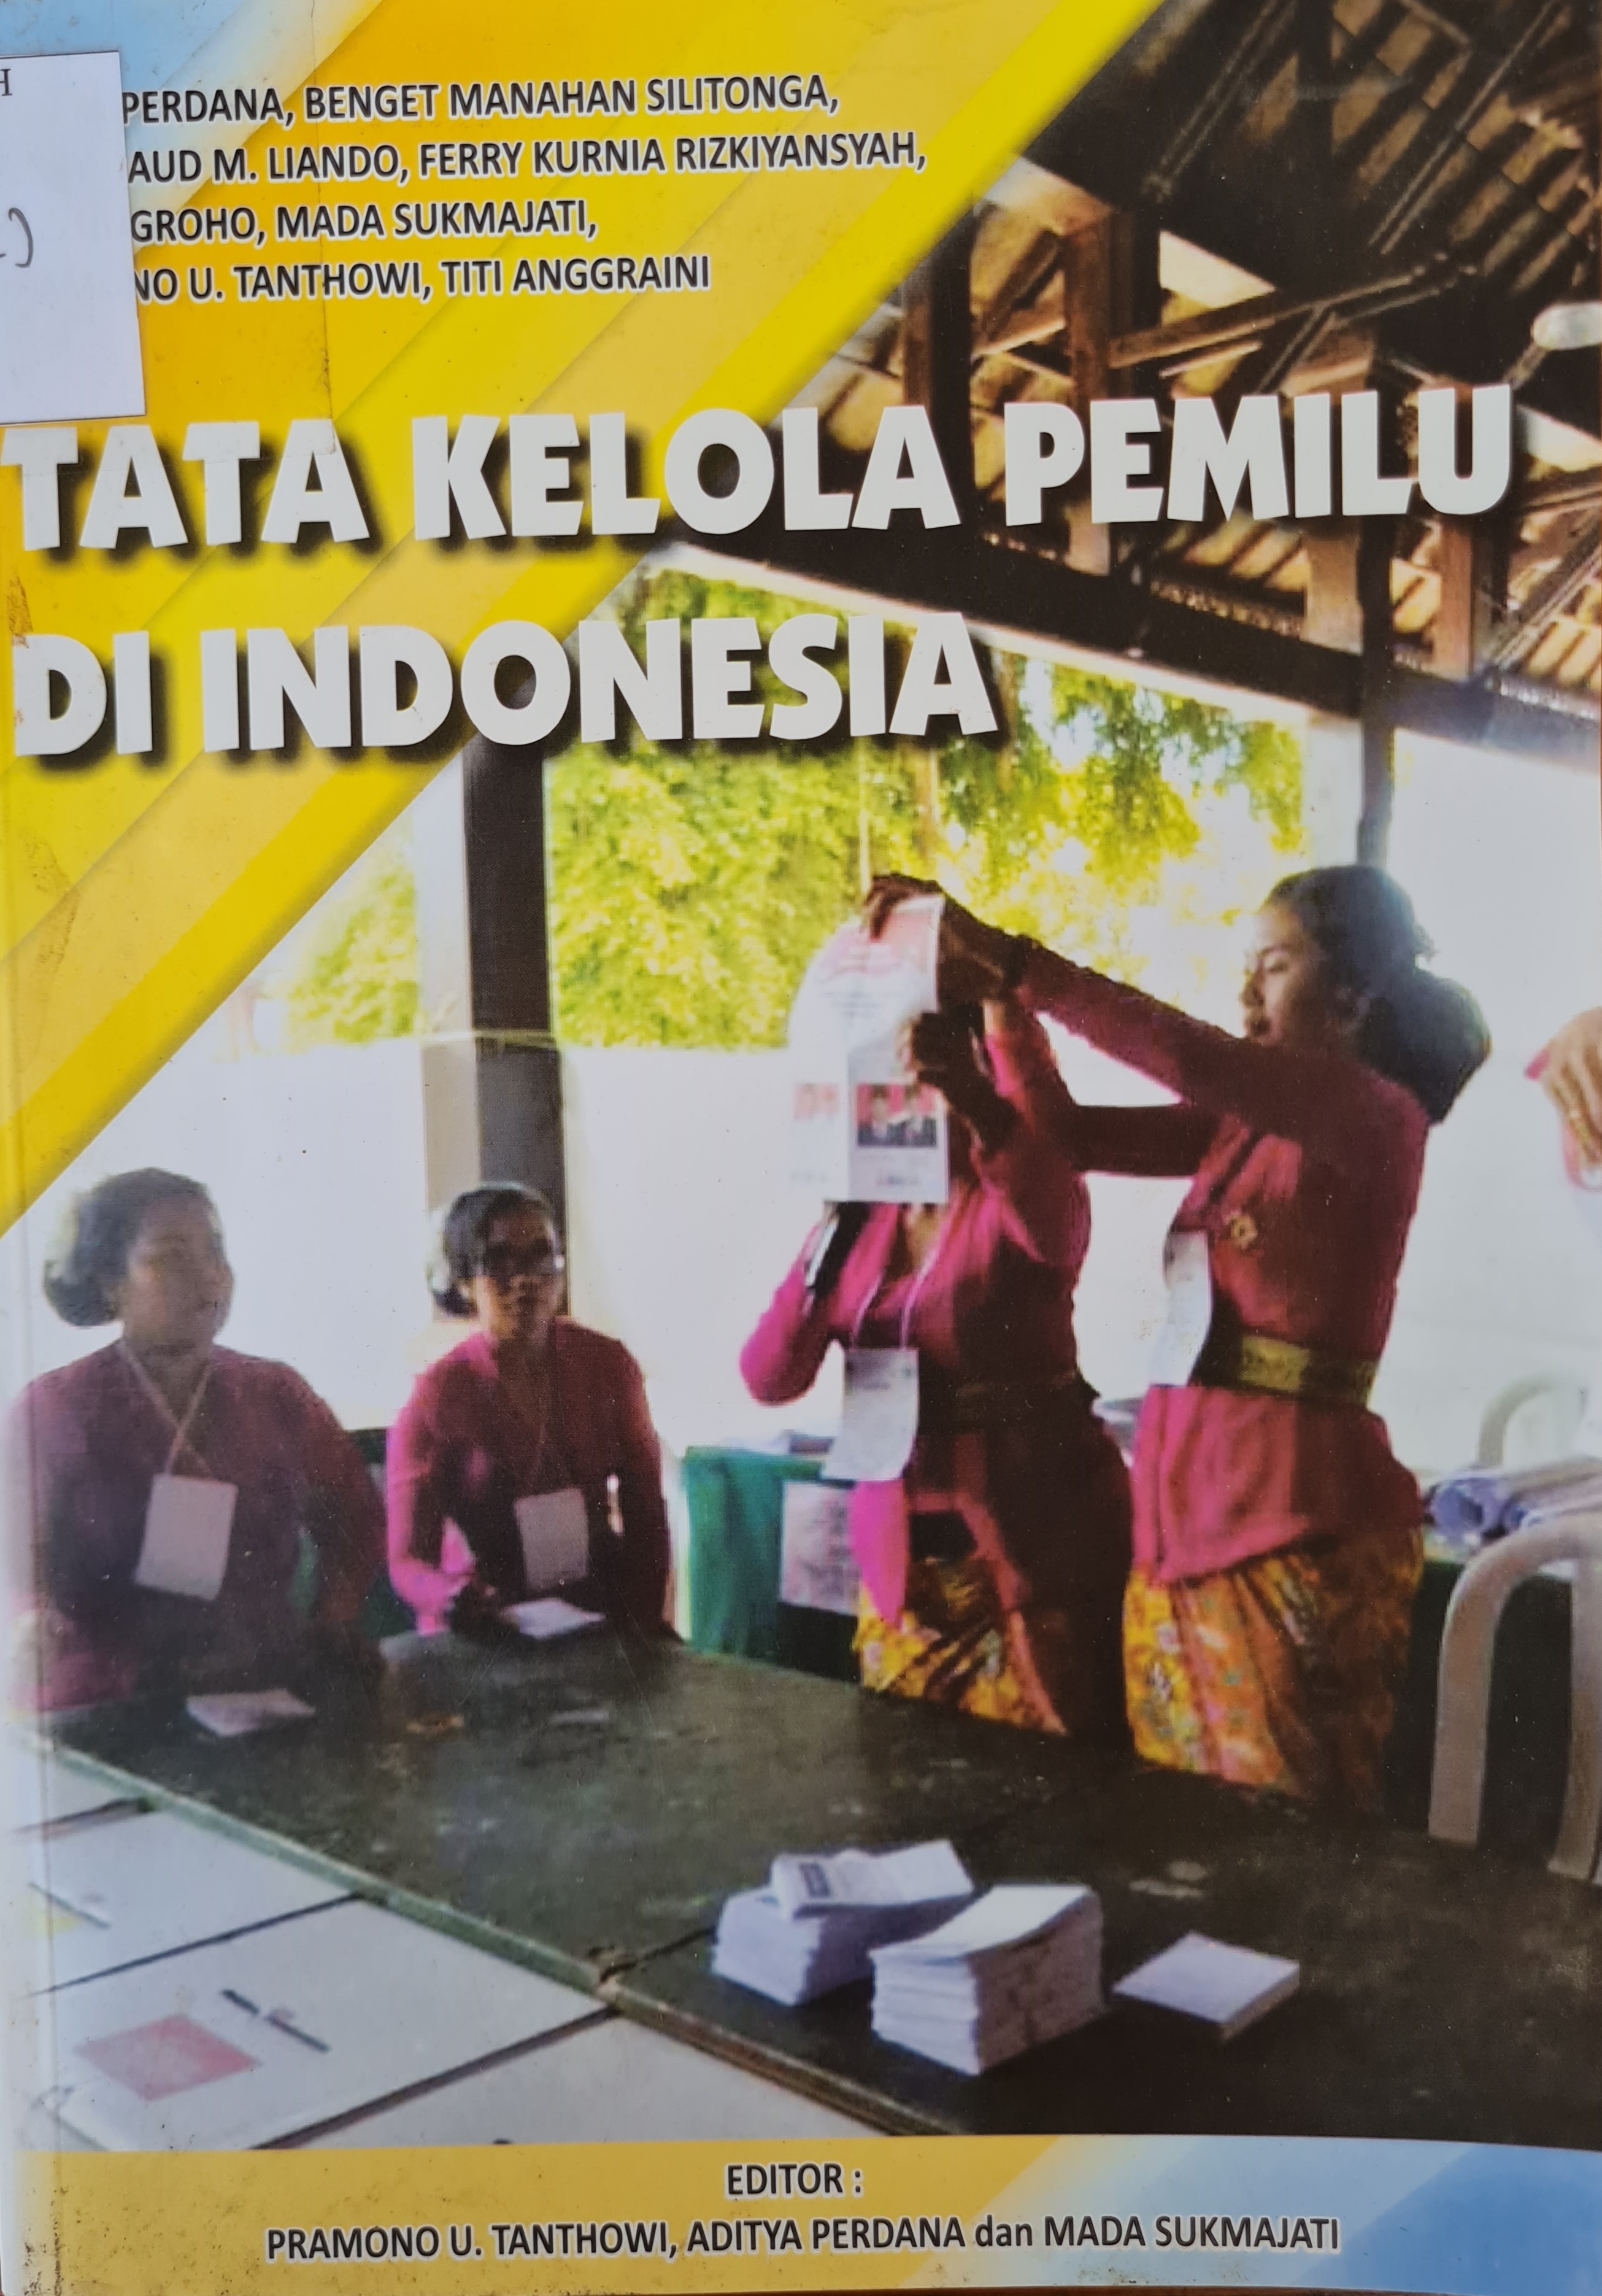 Tata Kelola Pemilu di Indonesia